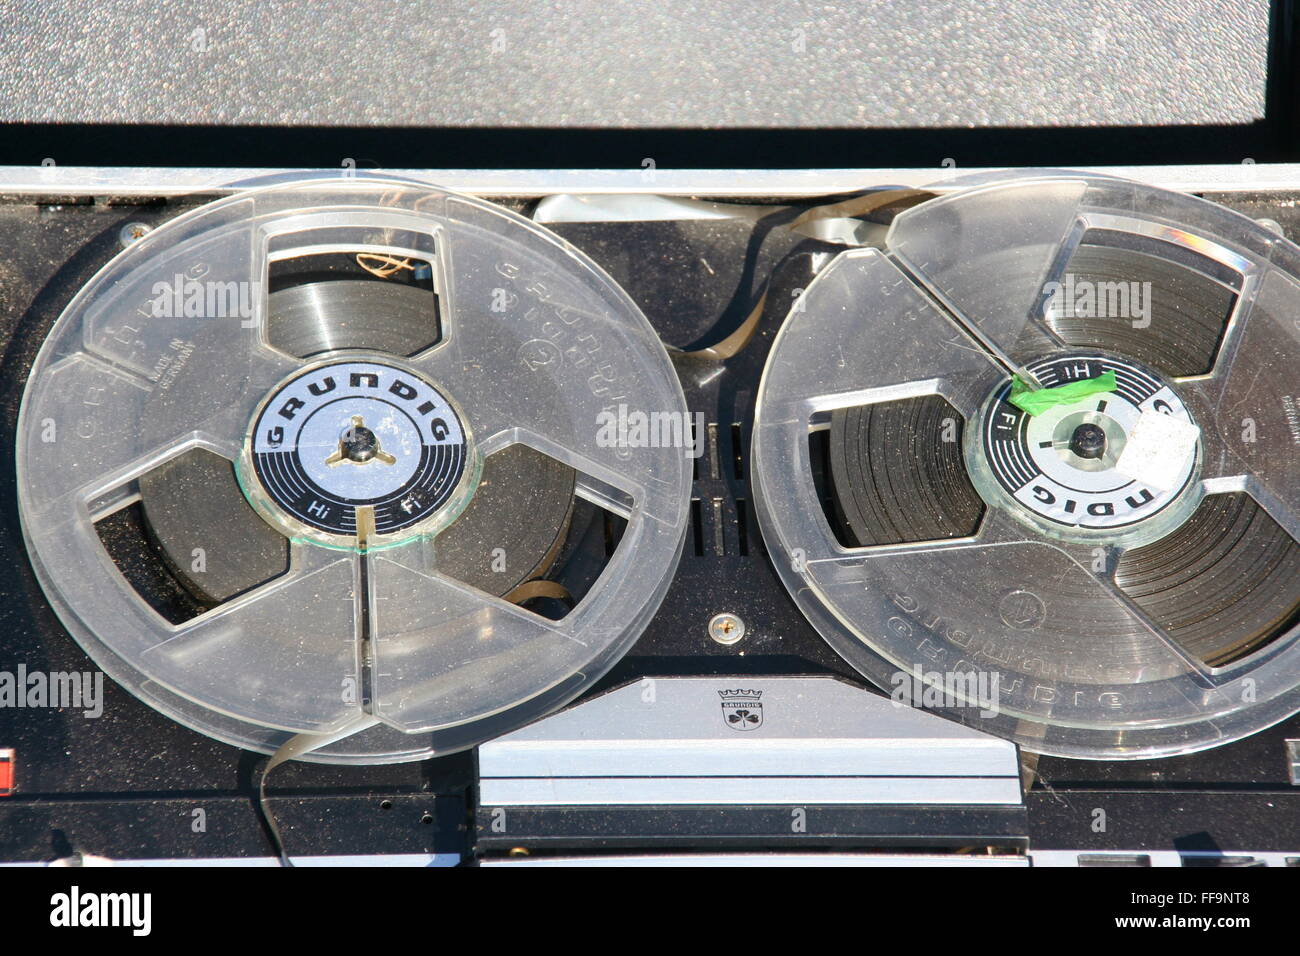 Meubles anciens Grunig reel-to-reel enregistreur, appuyez sur l'Allemagne. Banque D'Images